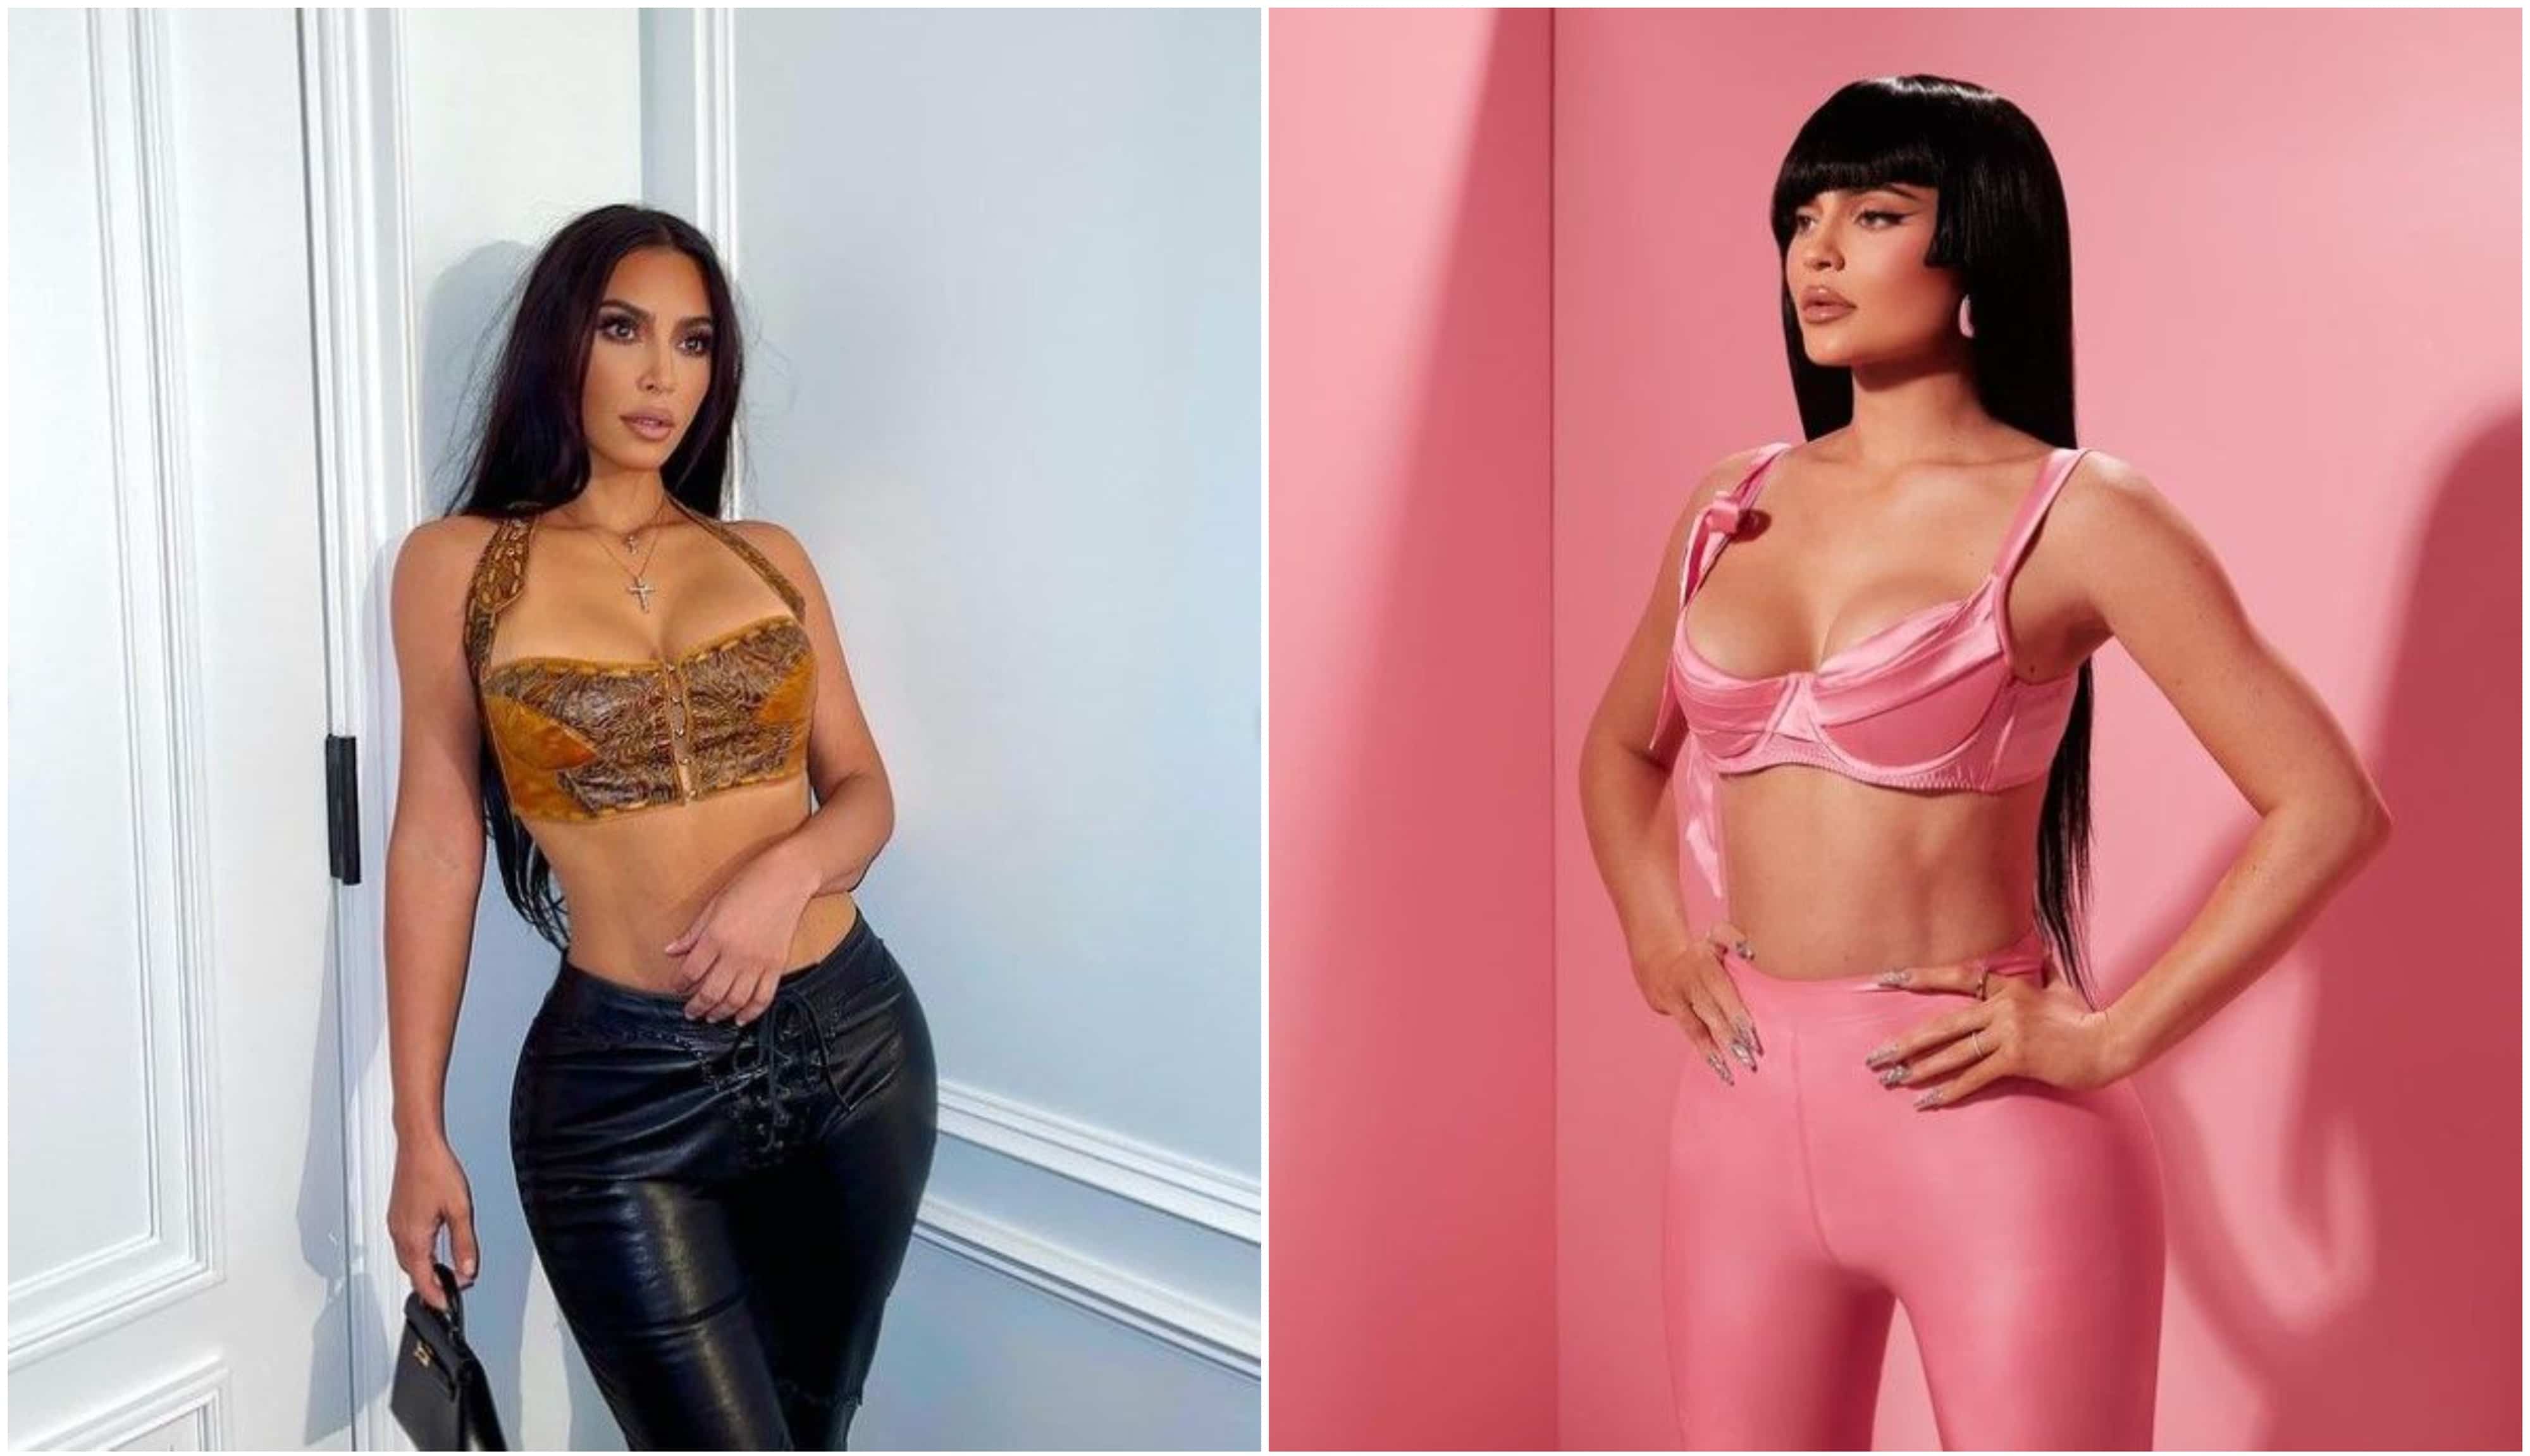 Kim Kardashian et Kylie Jenner : 2 personnes se font passer pour elles afin de toucher des indemnités chômage